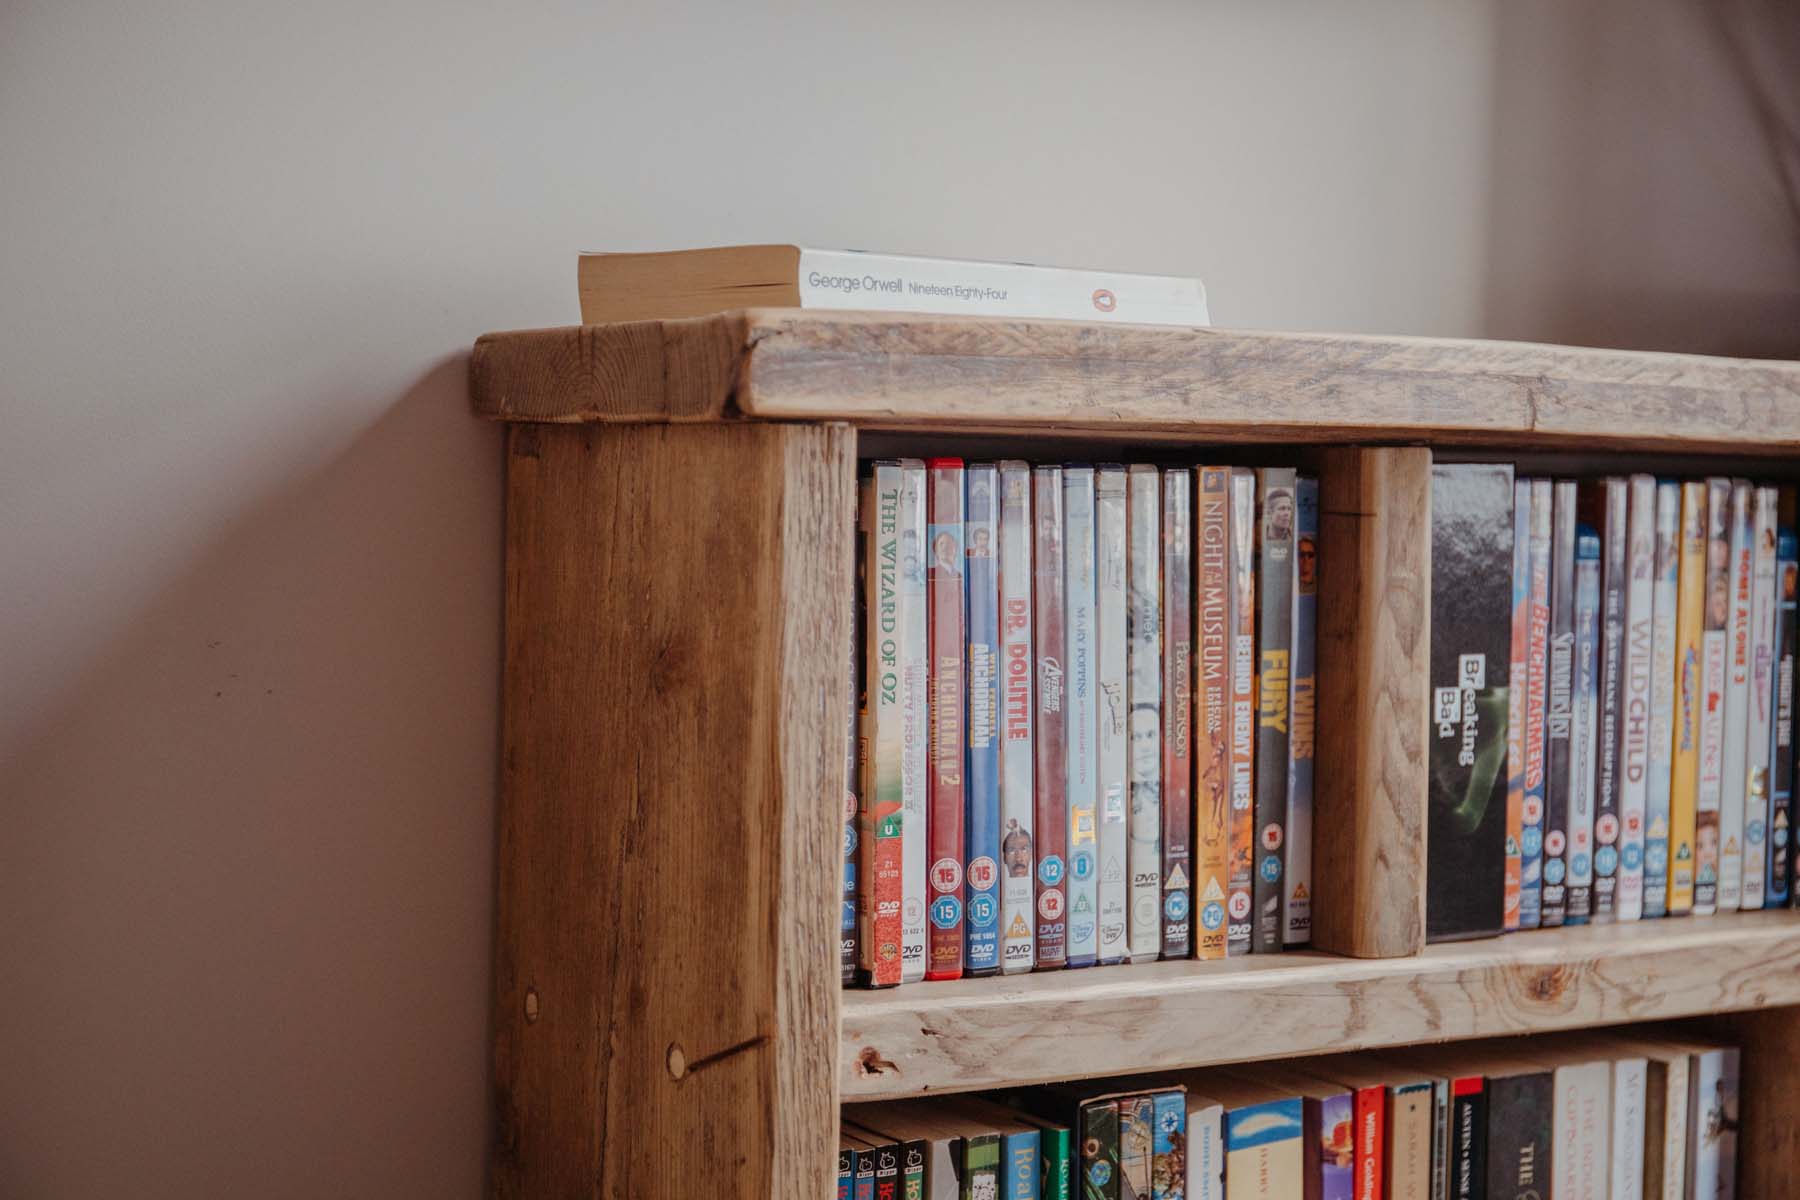 Books in a wooden bookshelf